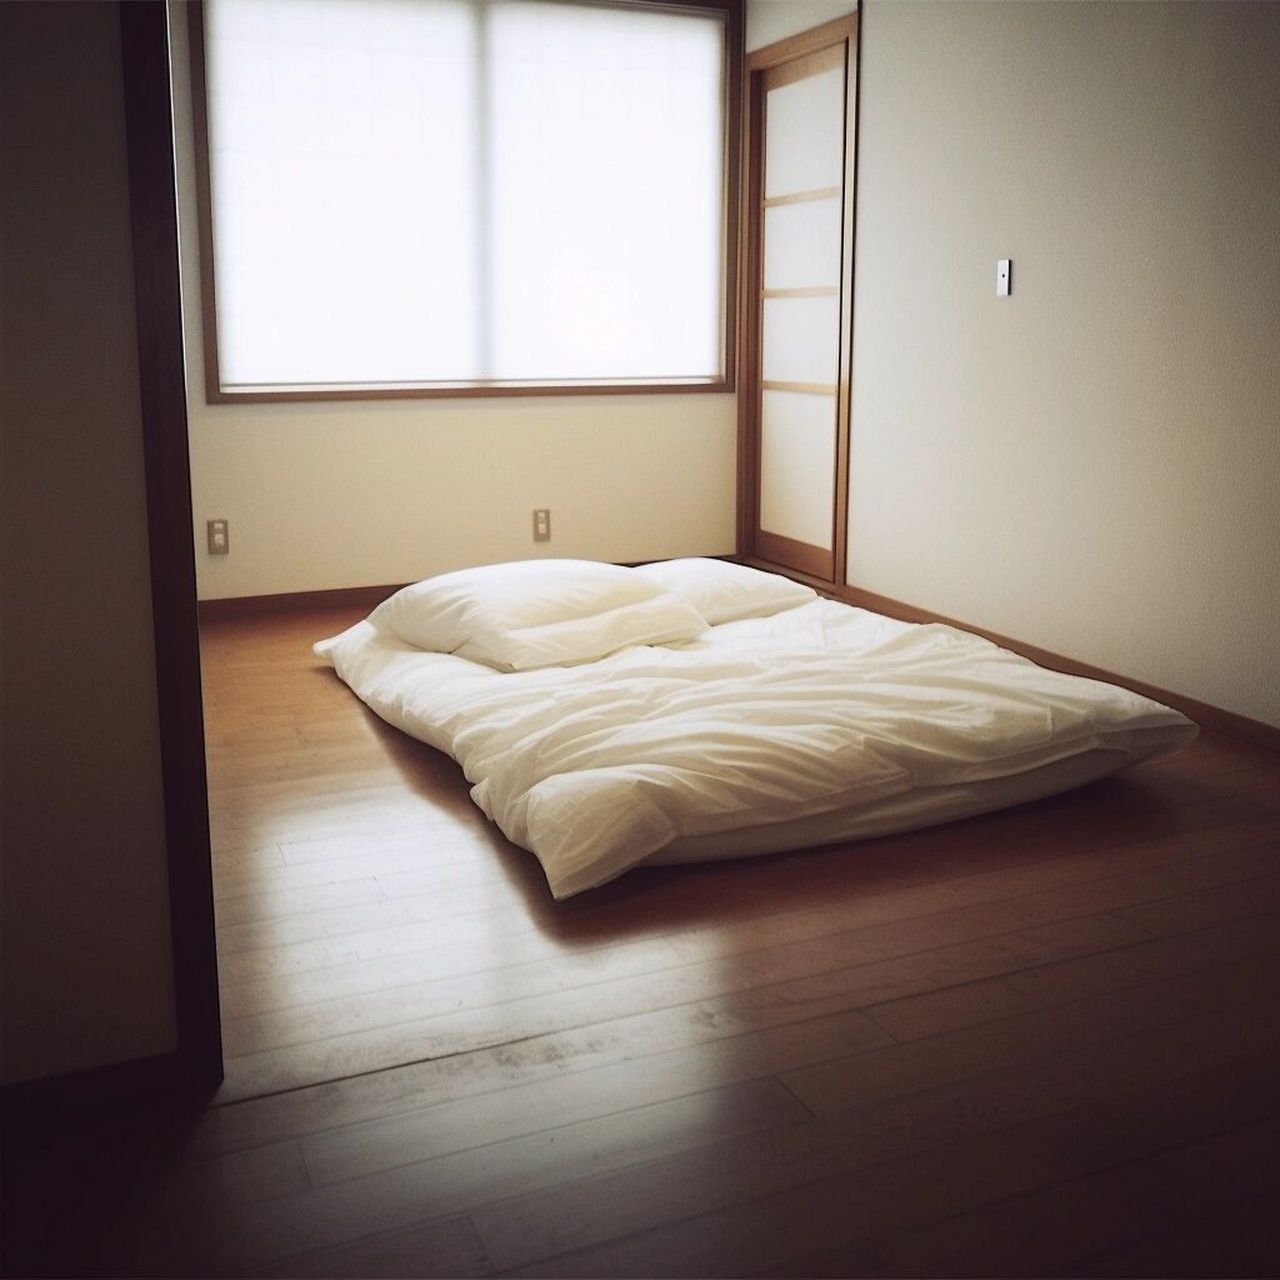 我的卧室空无一物,它很小,但有光 一个真正的极简主义者的卧室,除了